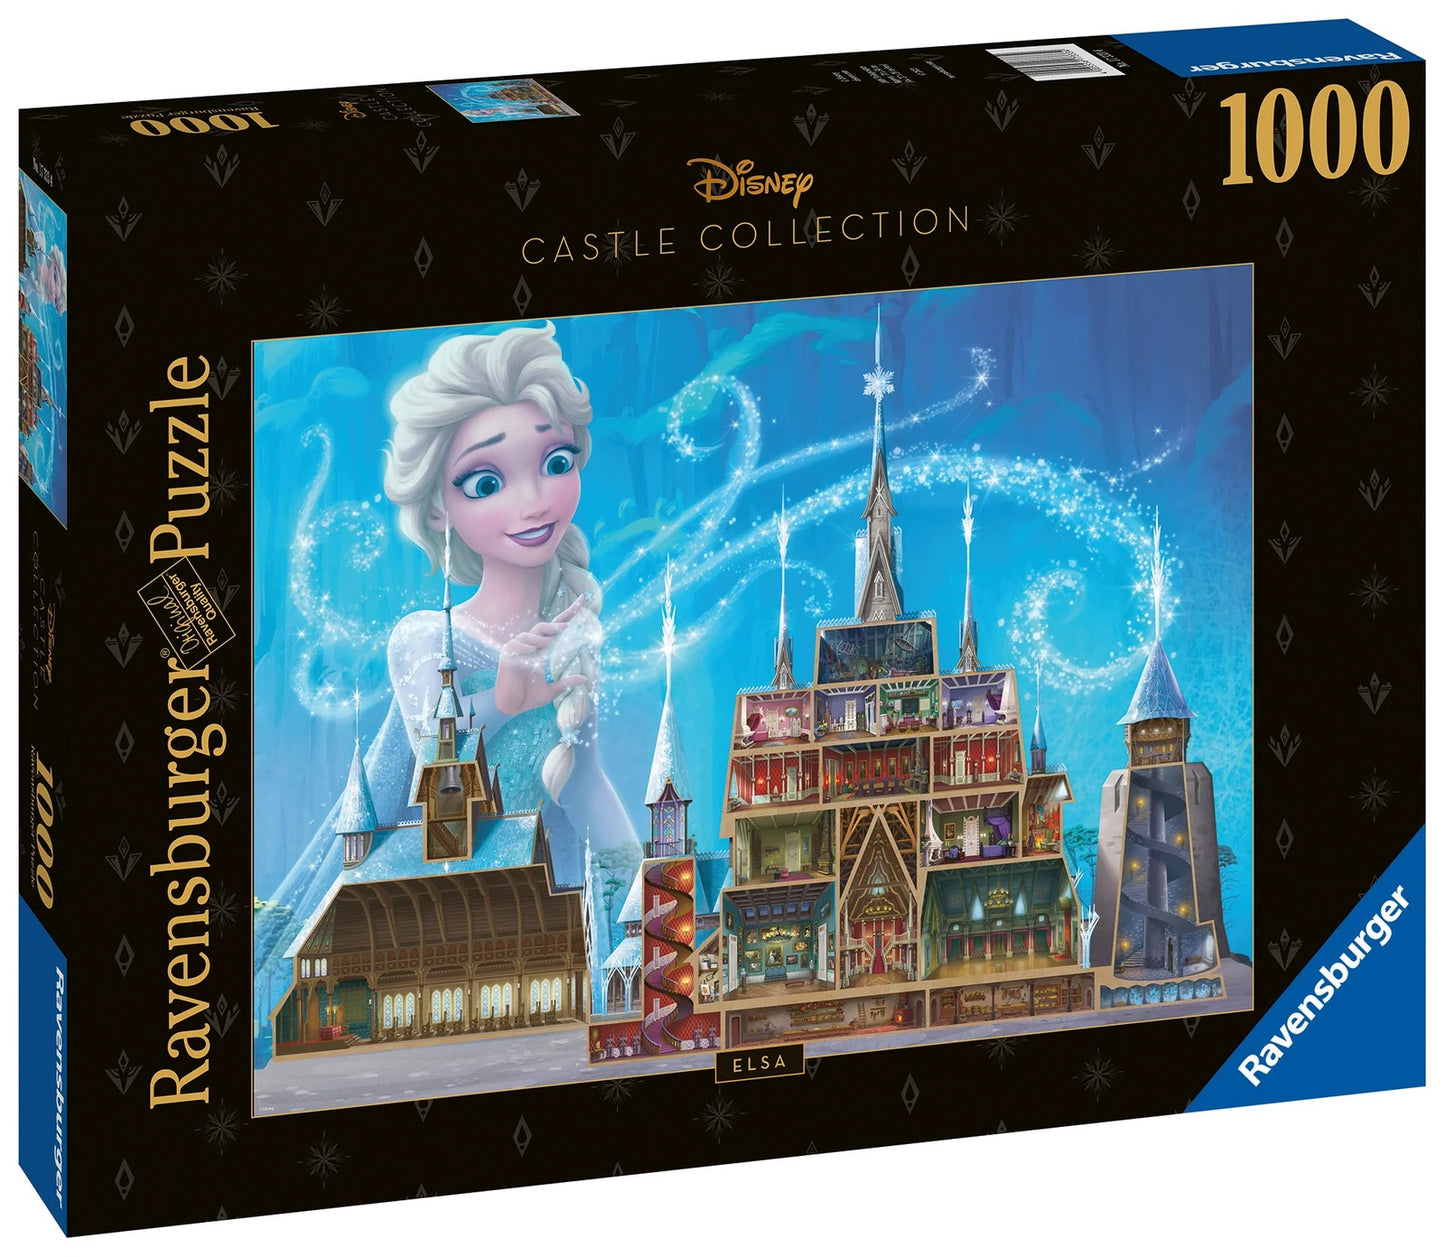 Casse-tête - Disney Château : Elsa 1000pcs